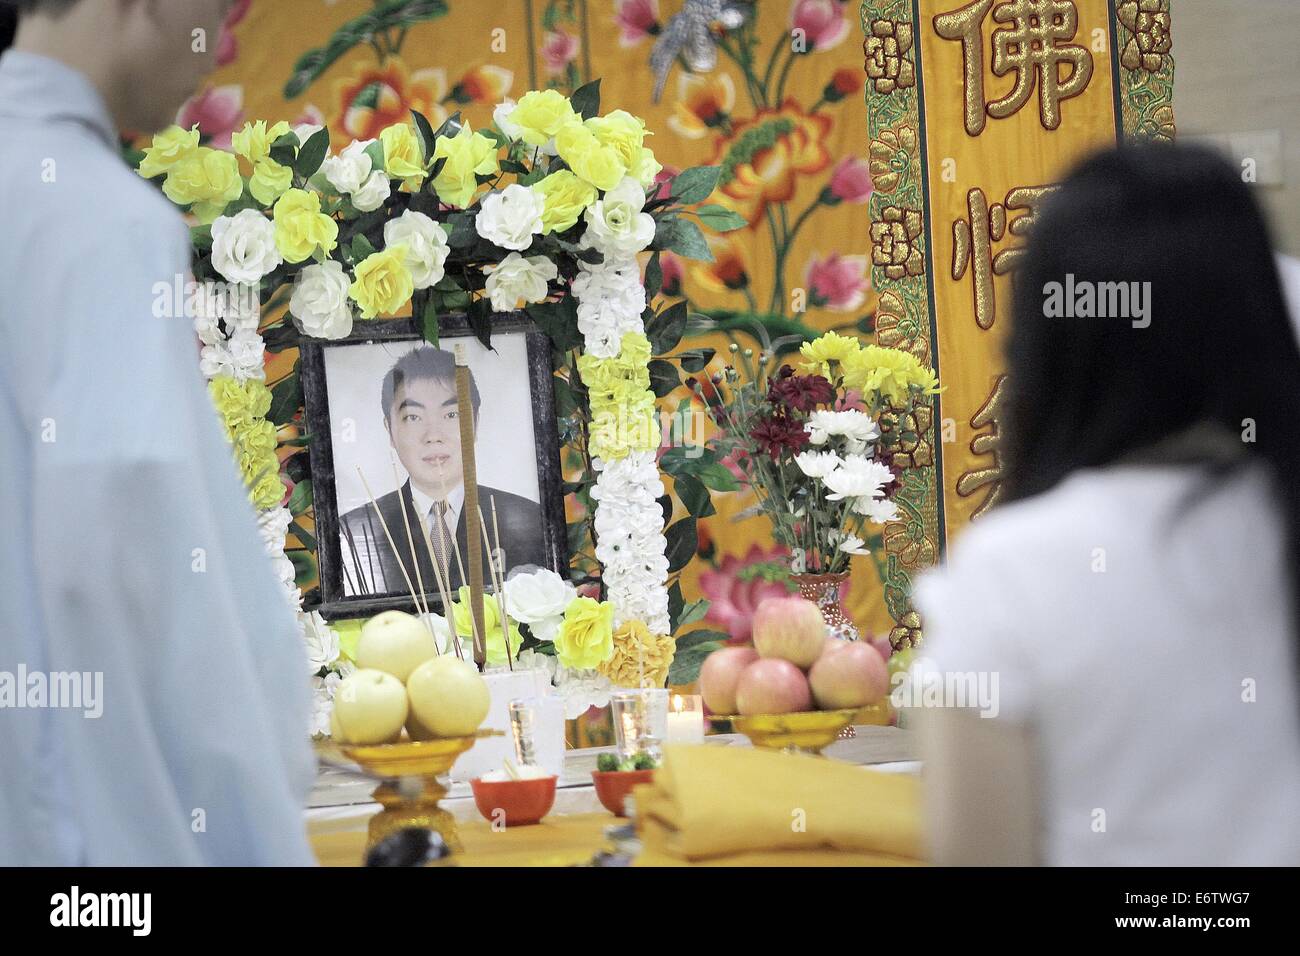 Jakarta, Indonésie. 31 août, 2014. Les gens d'origine chinoise donne corps la prière pendant les funérailles, Malaysia Airlines MH17 avion du passager abattu en Ukraine en juillet quand il est arrivé à Medan, au nord de Sumatra, en Indonésie. Crédit : Ivan Damanik/Pacific Press/Alamy Live News Banque D'Images